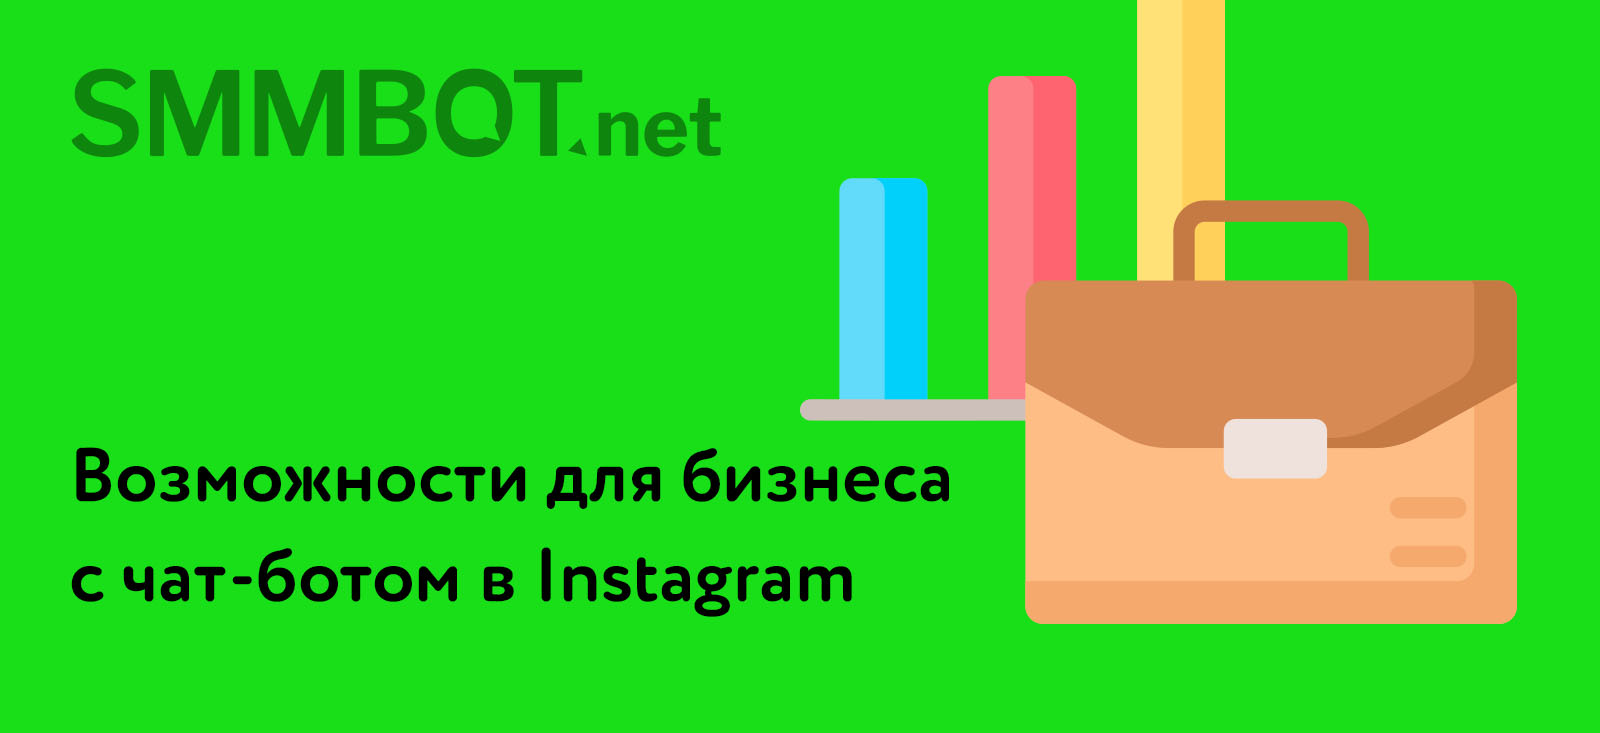 Чат-бот в Instagram 2021: возможности для бизнеса и продвижения